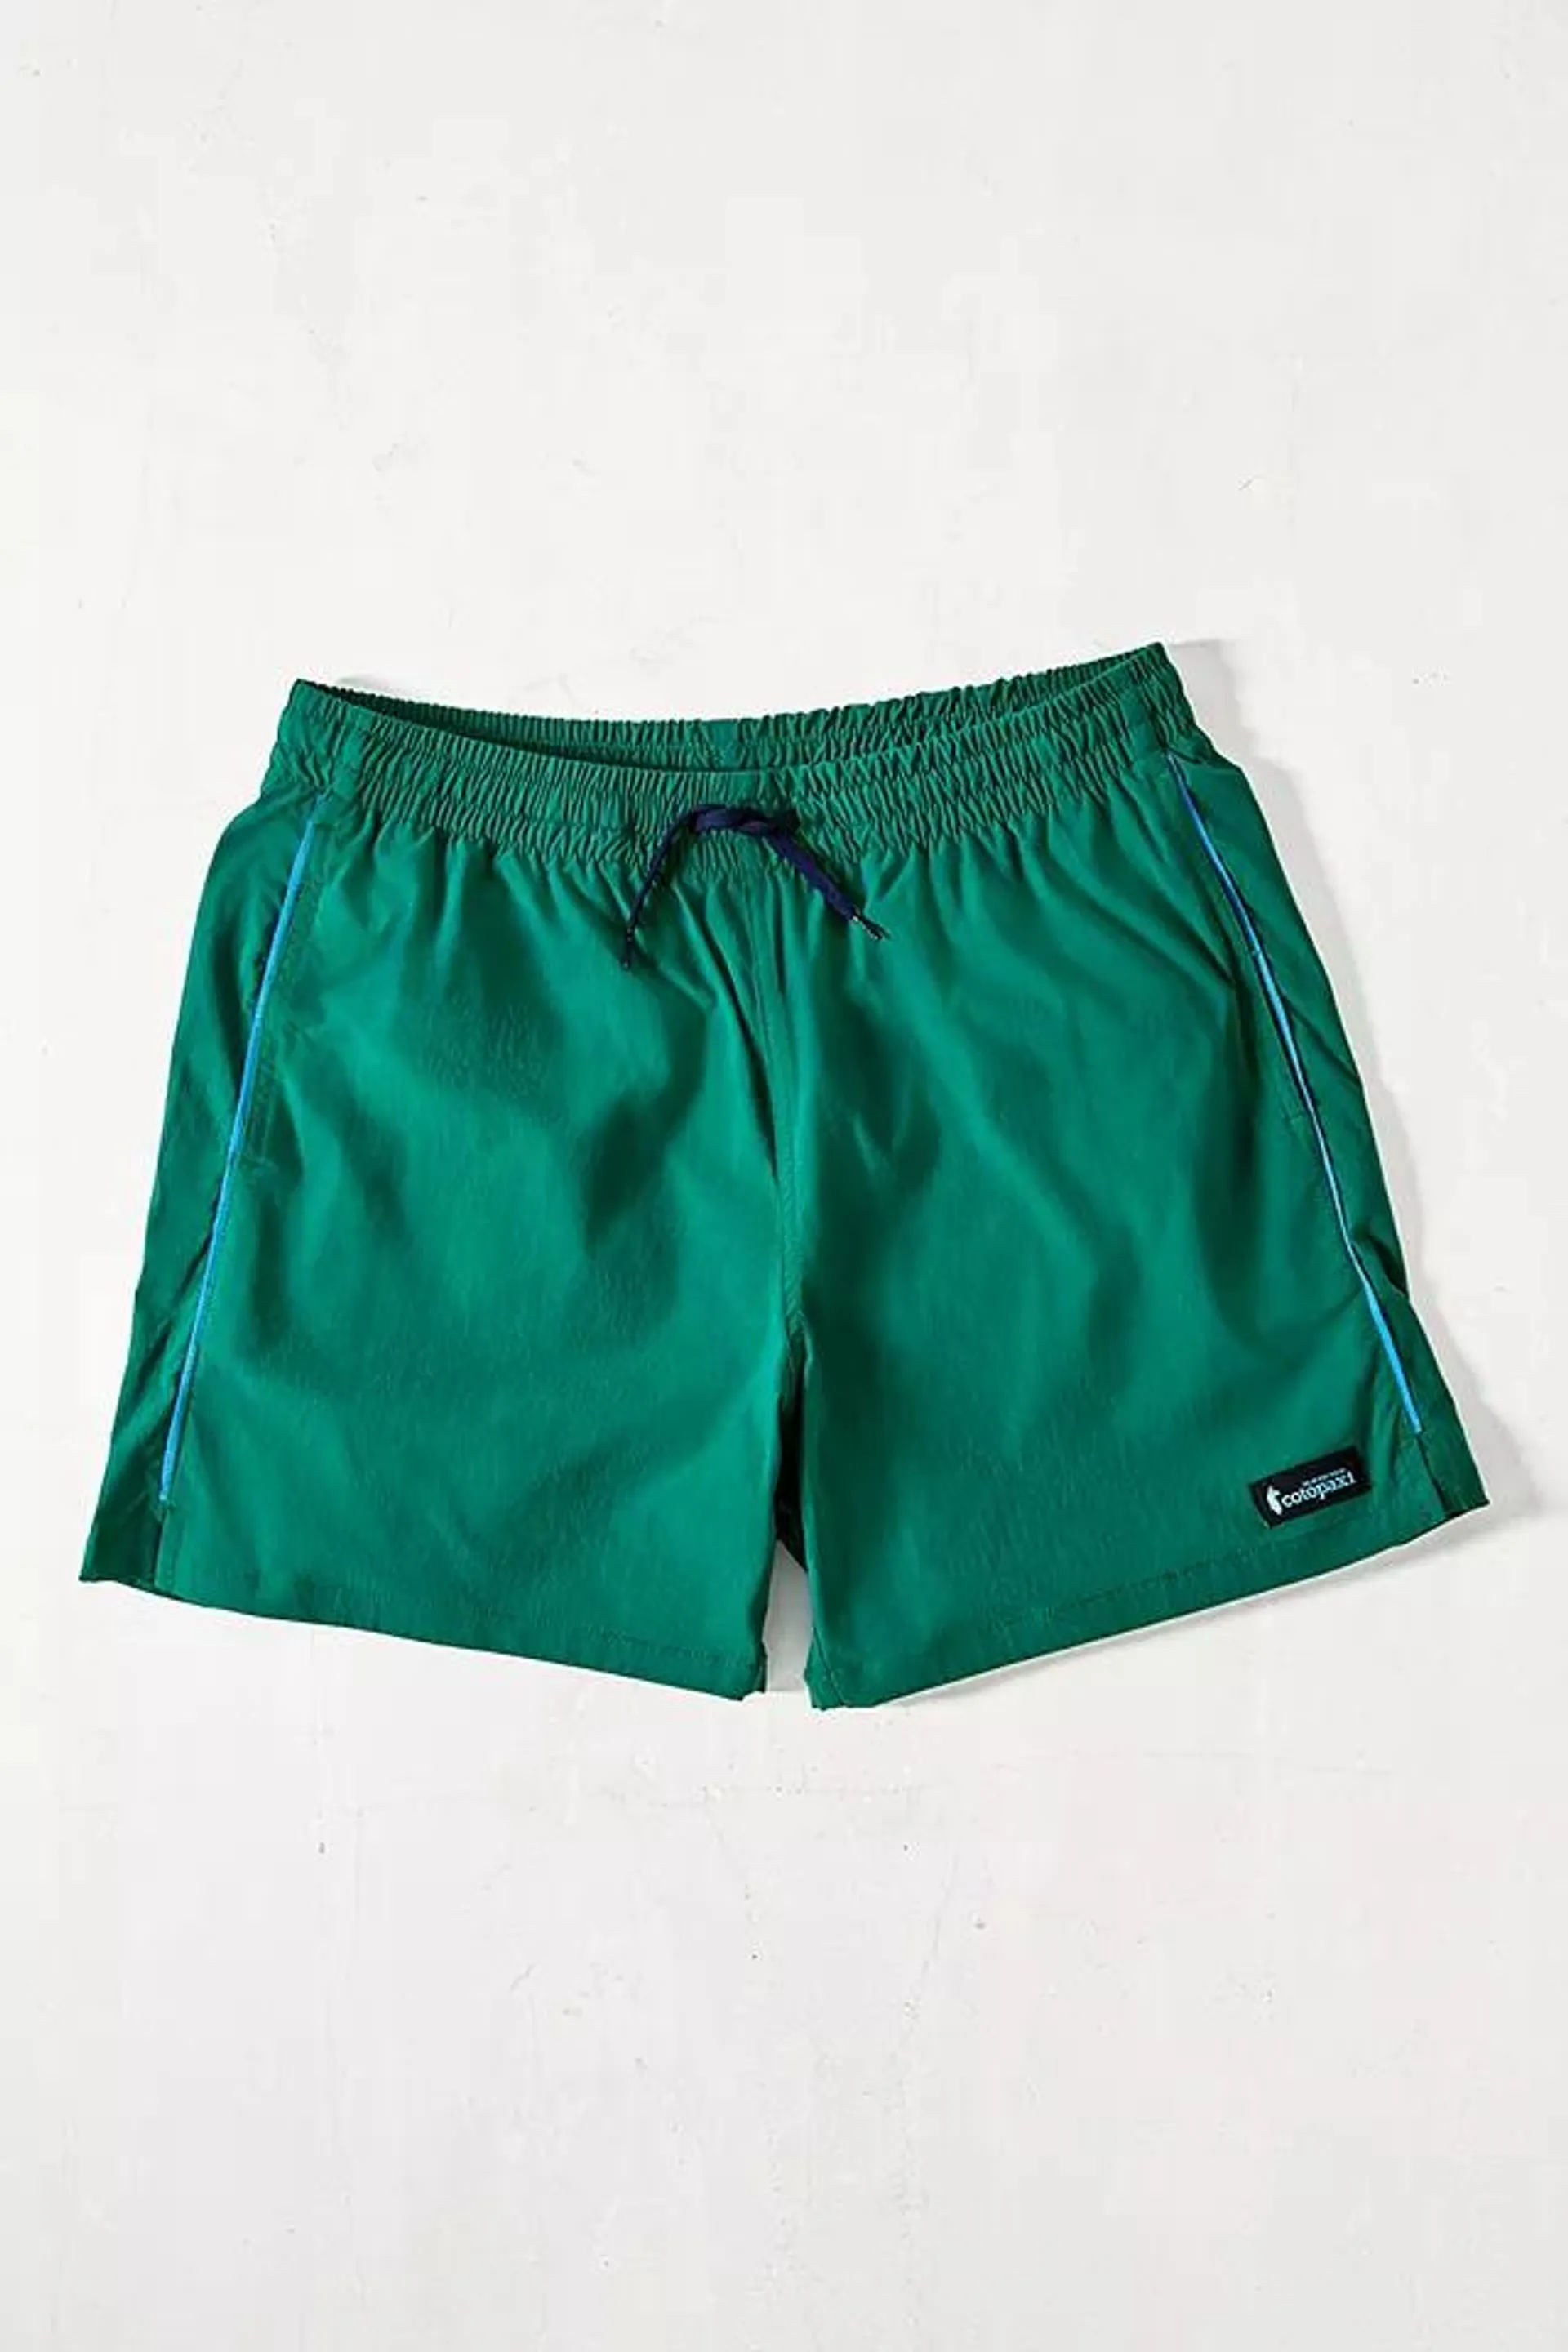 Cotopaxi Green Brinco Shorts